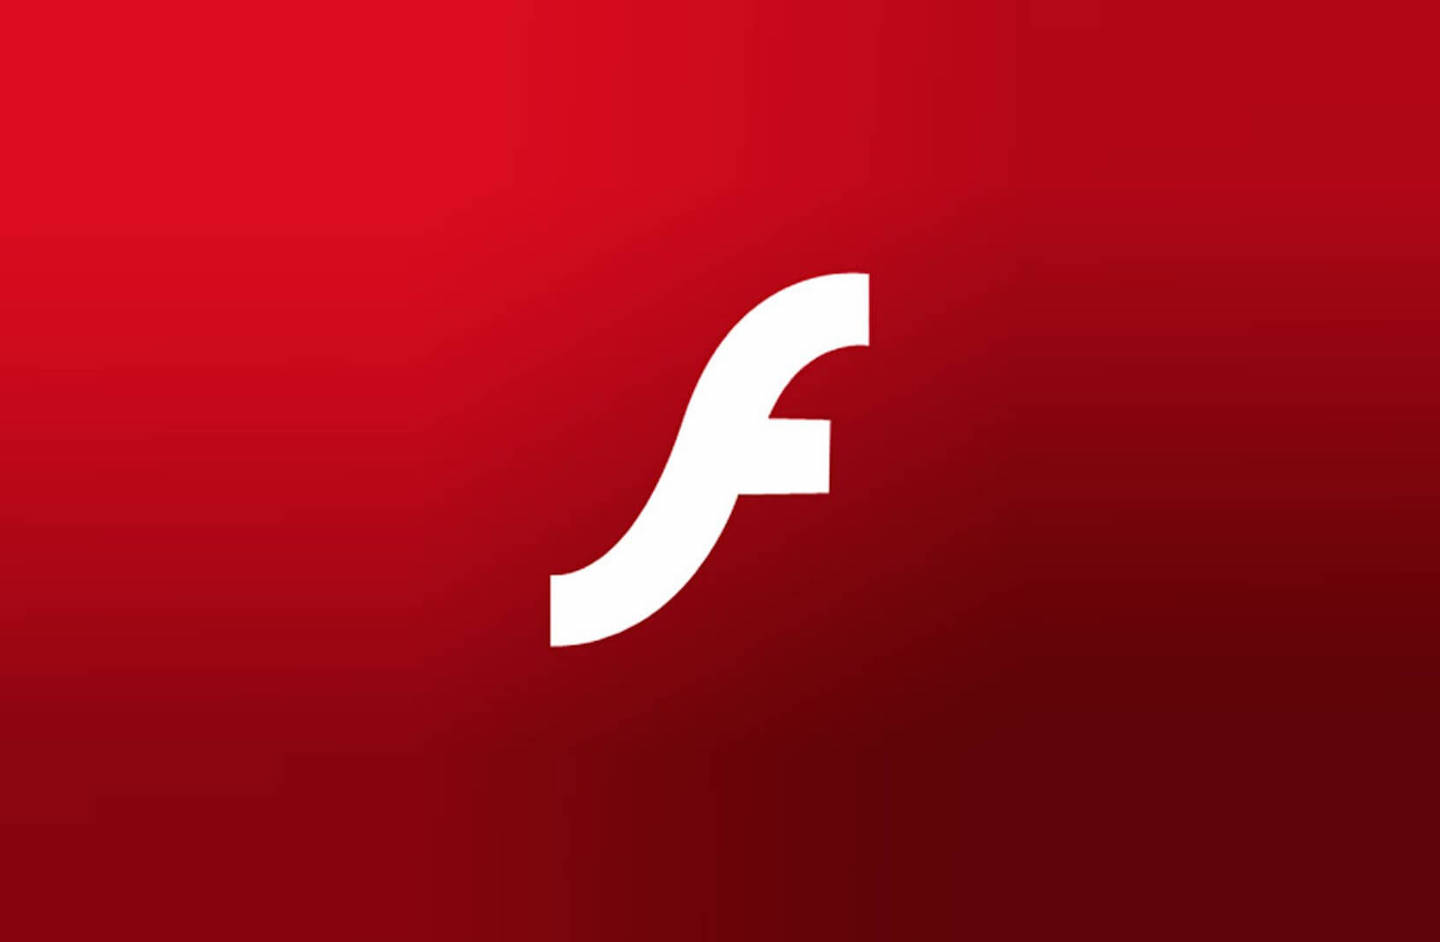 终于,Adobe 将在 2020 年完全终止对 Flash 